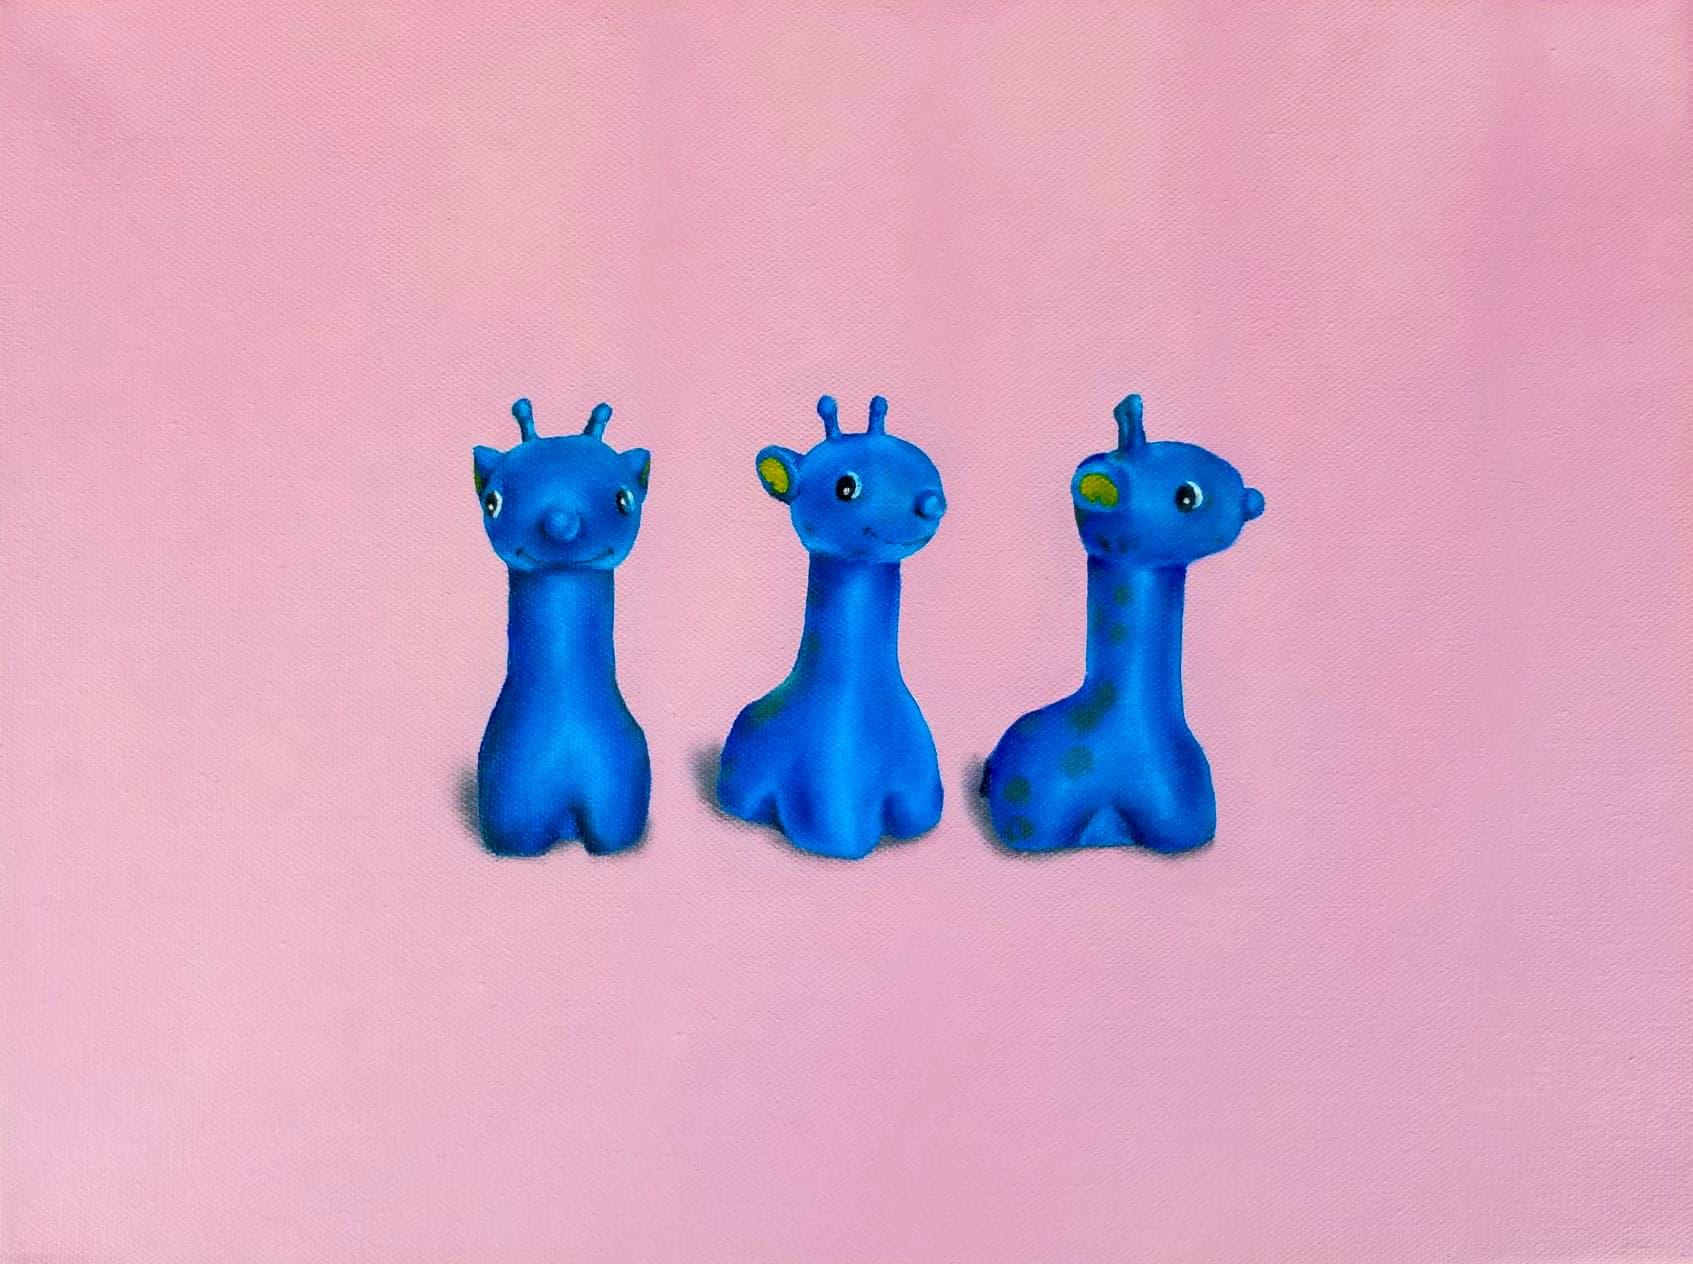 Dieses Gemälde wurde durch das allererste Spielzeug der Künstlerin inspiriert, eine kleine blaue Giraffe, die sie als einjähriges Baby bekam. Es ist etwas, das sie ihr ganzes Leben lang begleitet hat, und obwohl es leblos ist, entsteht durch die